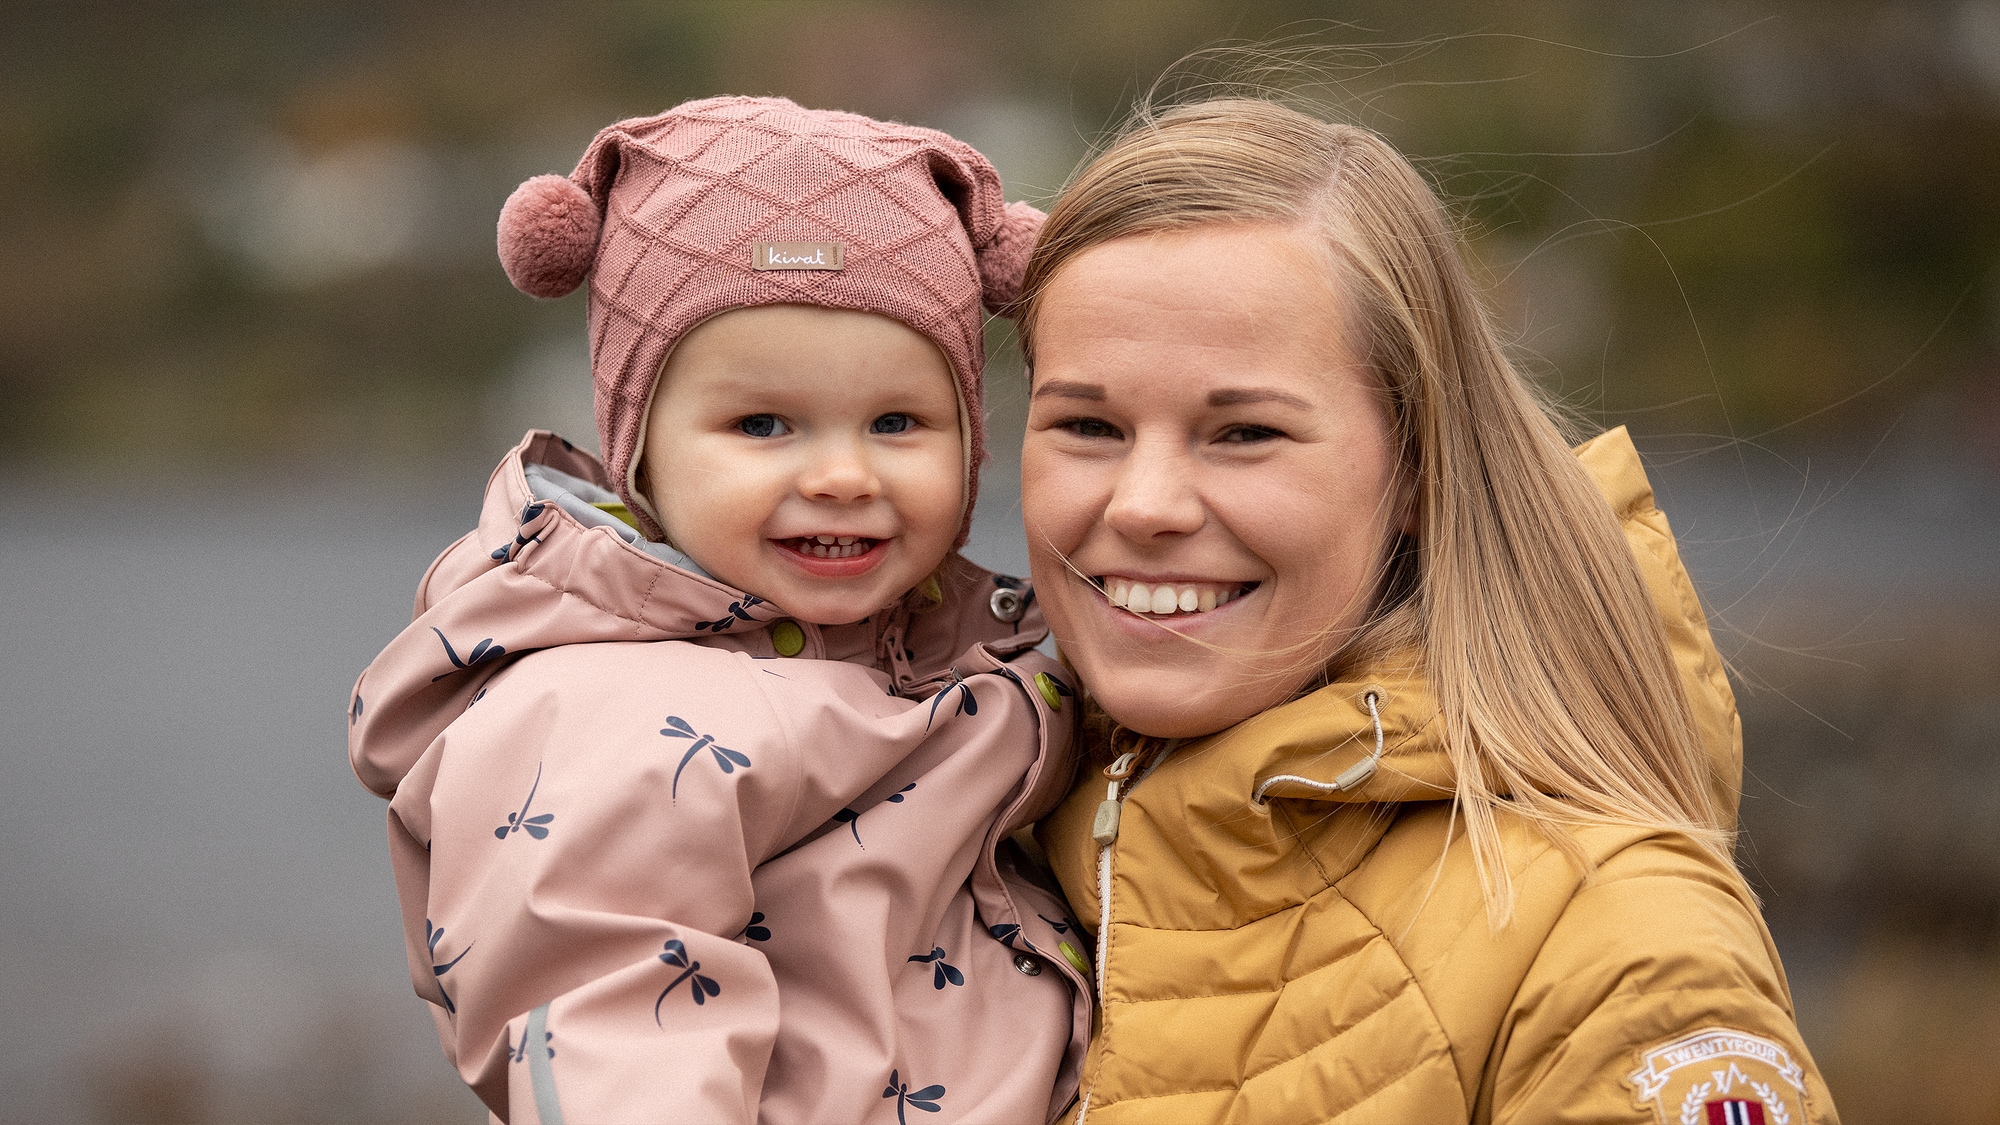 Portrett av Daniëlle og datteren på 1,5 år. Daniëlle har på seg en gul jakke og smiler bredt med tennenene. Datteren er ikledd en rosa buksedress og har på seg en rosa lue. 